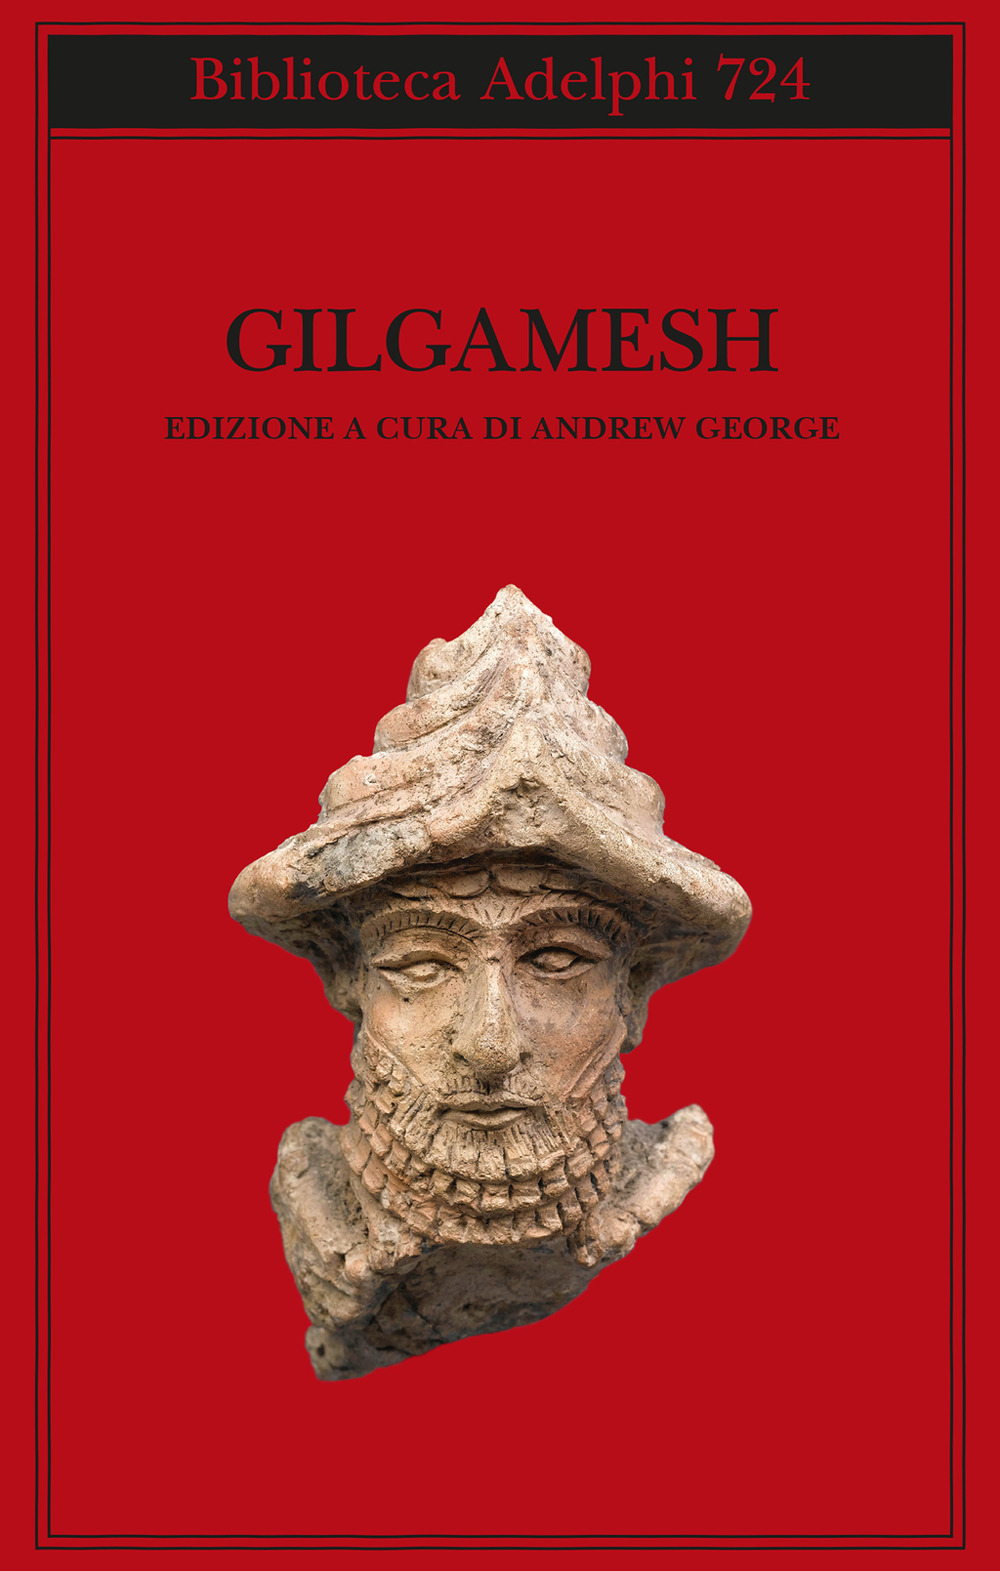 Image of Gilgamesh. Il poema epico babilonese e altri testi in accadico e sumerico